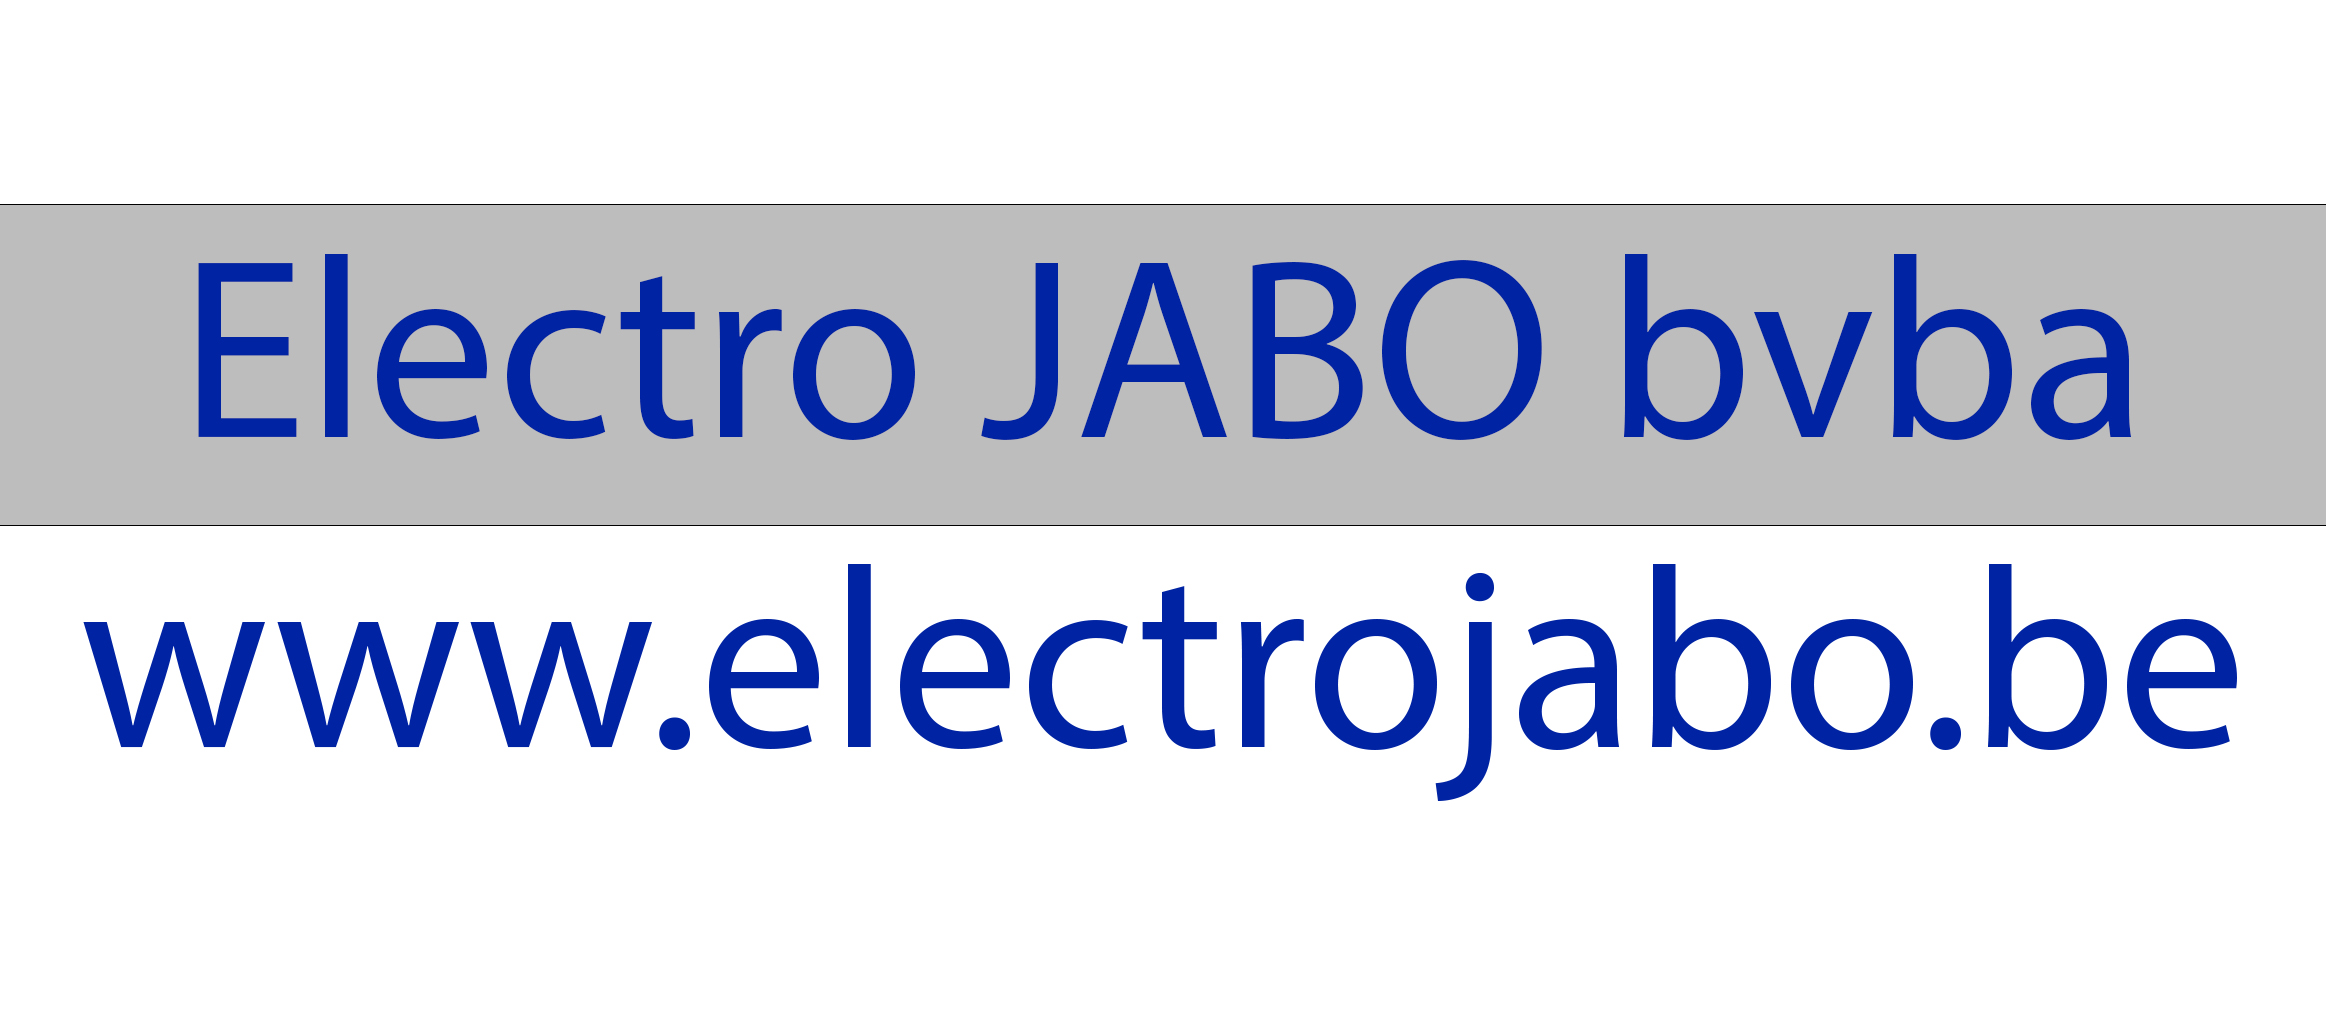 Electro Jabo